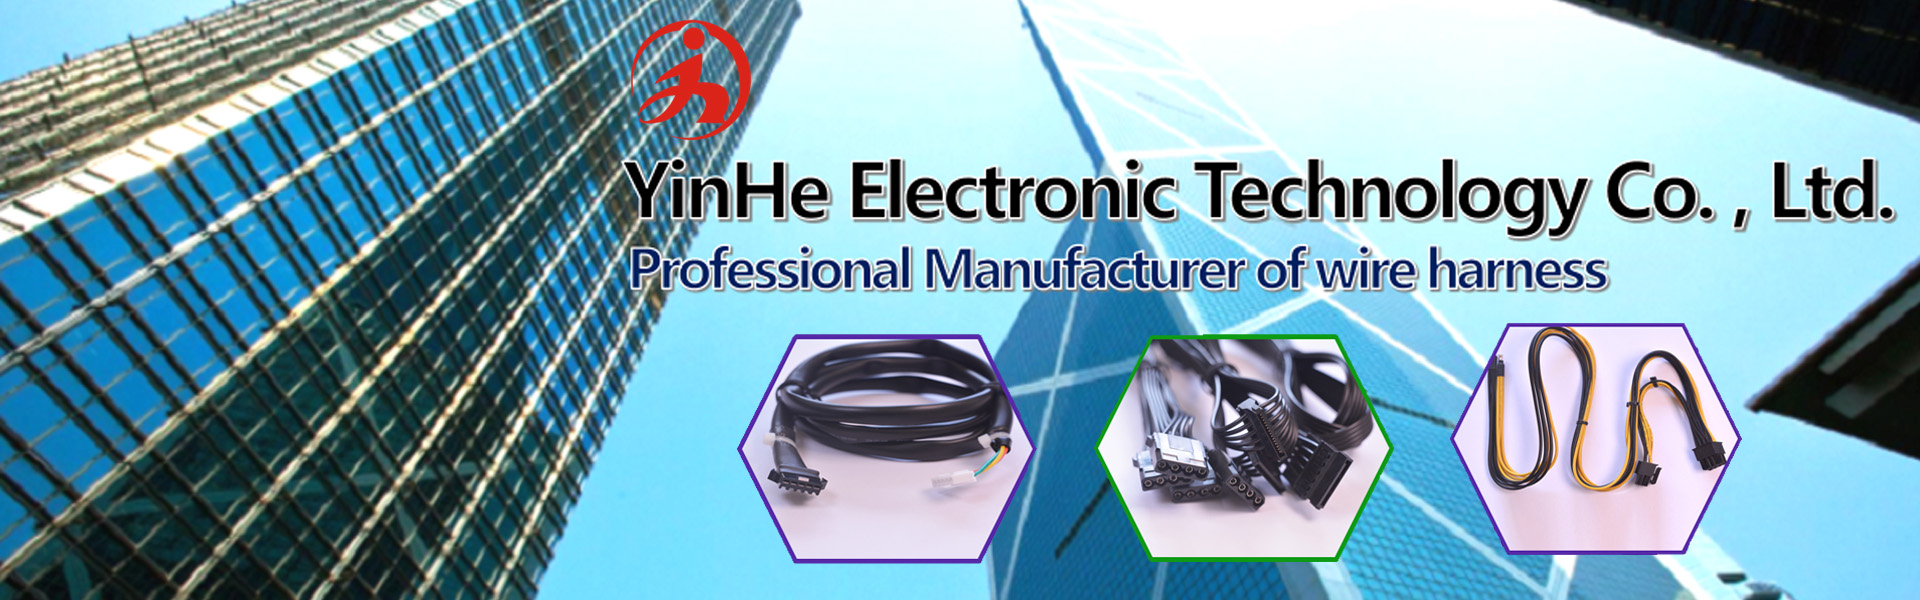 Huzal kábelköteg, szigetelés elmozdulási csatlakozó, kábelszerelvény,YinHe (DongGuan) Electronic Technology Co., LTD